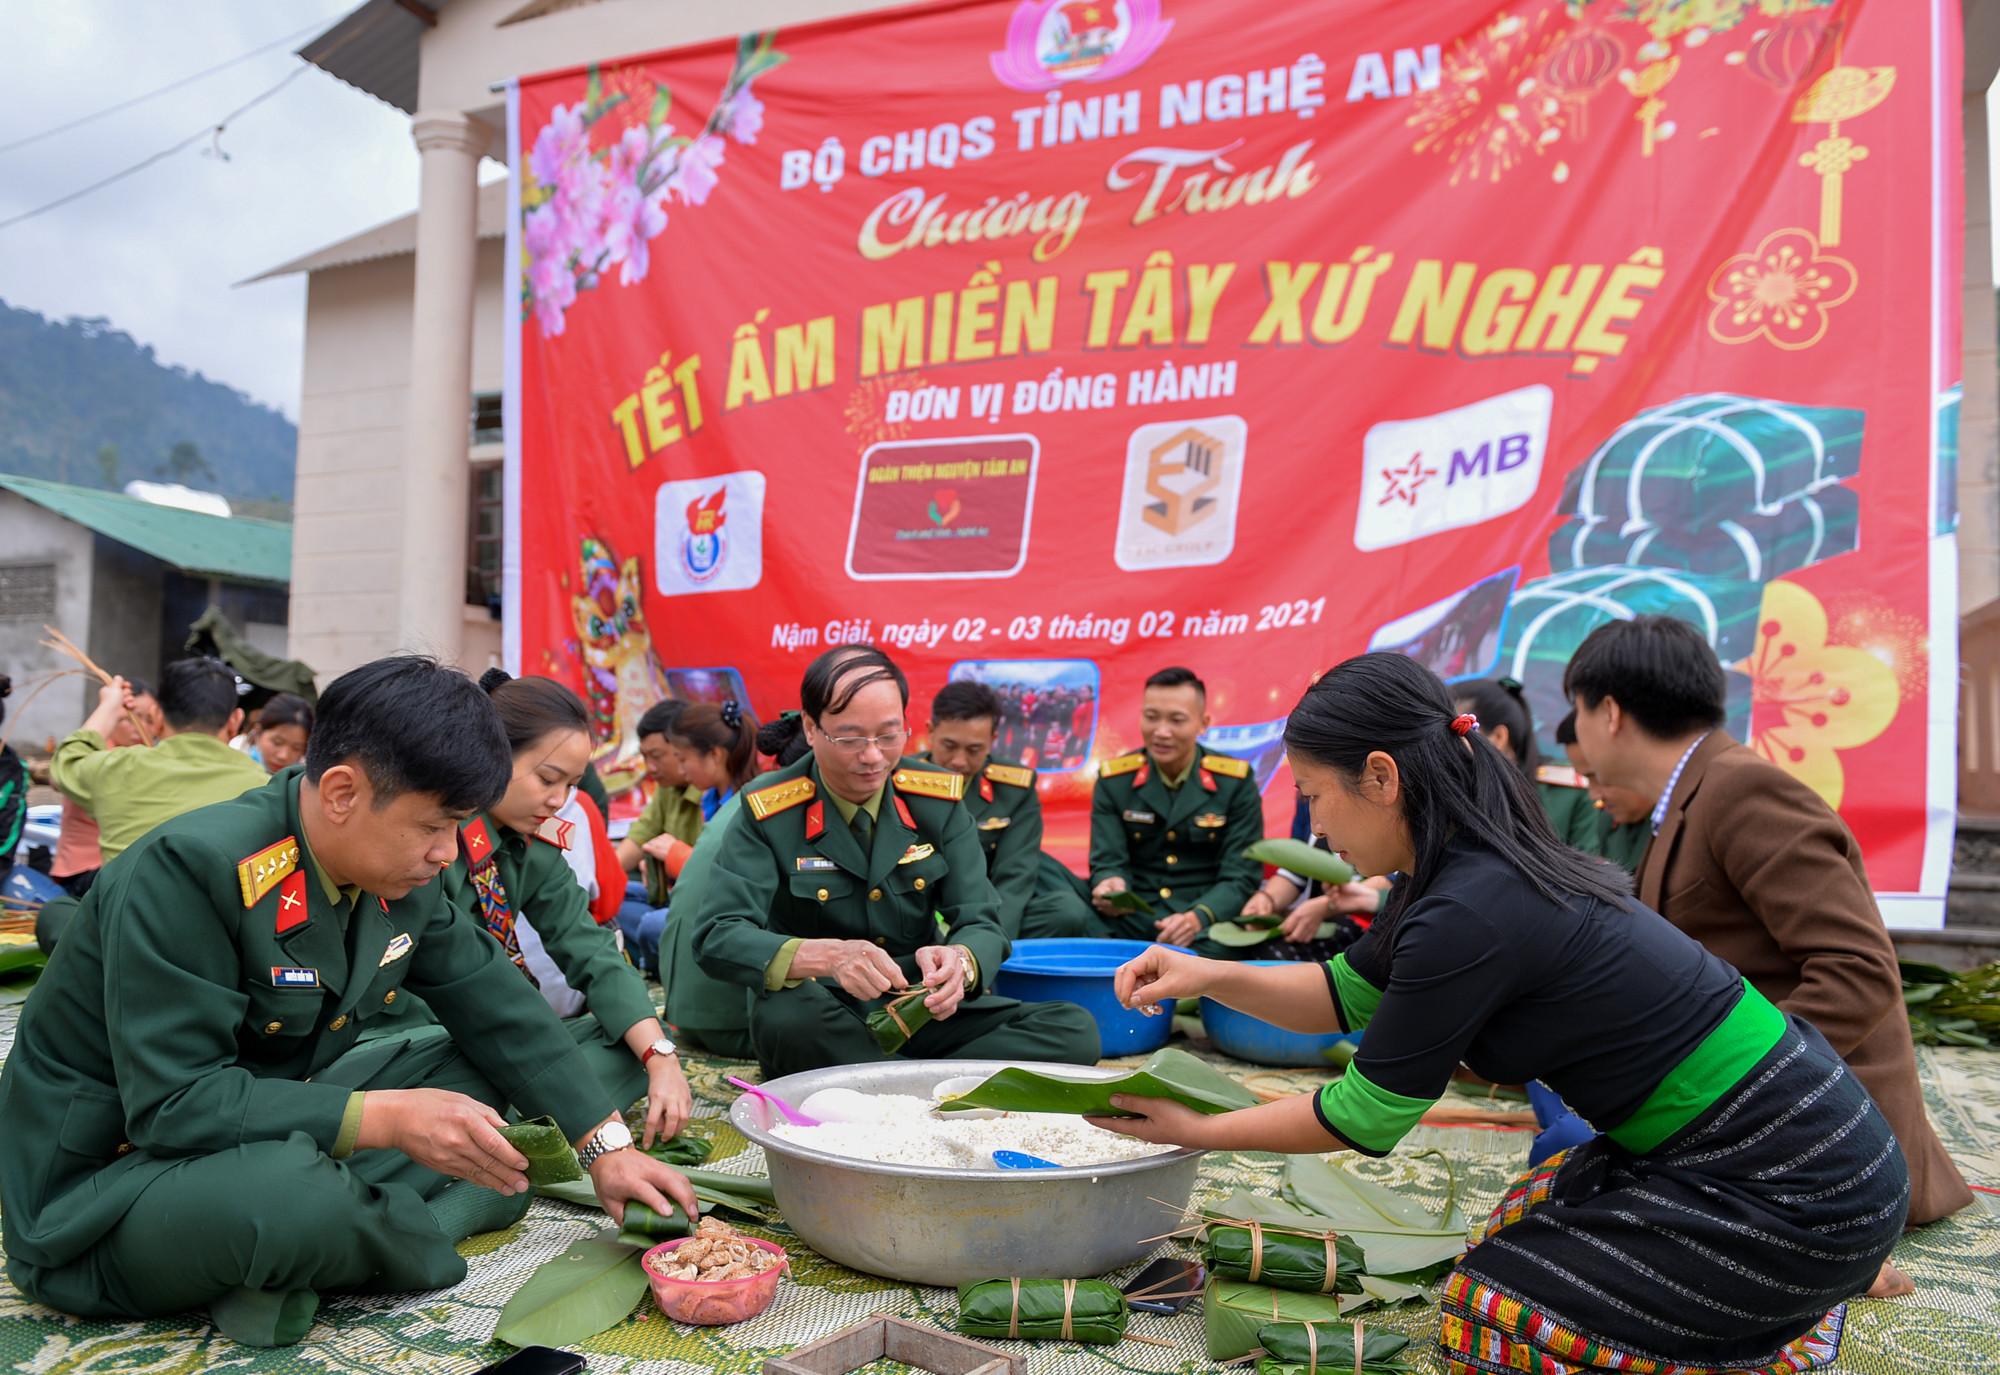 Nậm Giải là một xã biên giới đặc biệt khó khăn của huyện Quế Phong. Từ năm 2012, xã Nậm Giải được Bộ chỉ huy Quân sự tỉnh hỗ trợ trong công tác xóa đói giảm nghèo, xây dựng nông thôn mới, phát triển kinh tế.